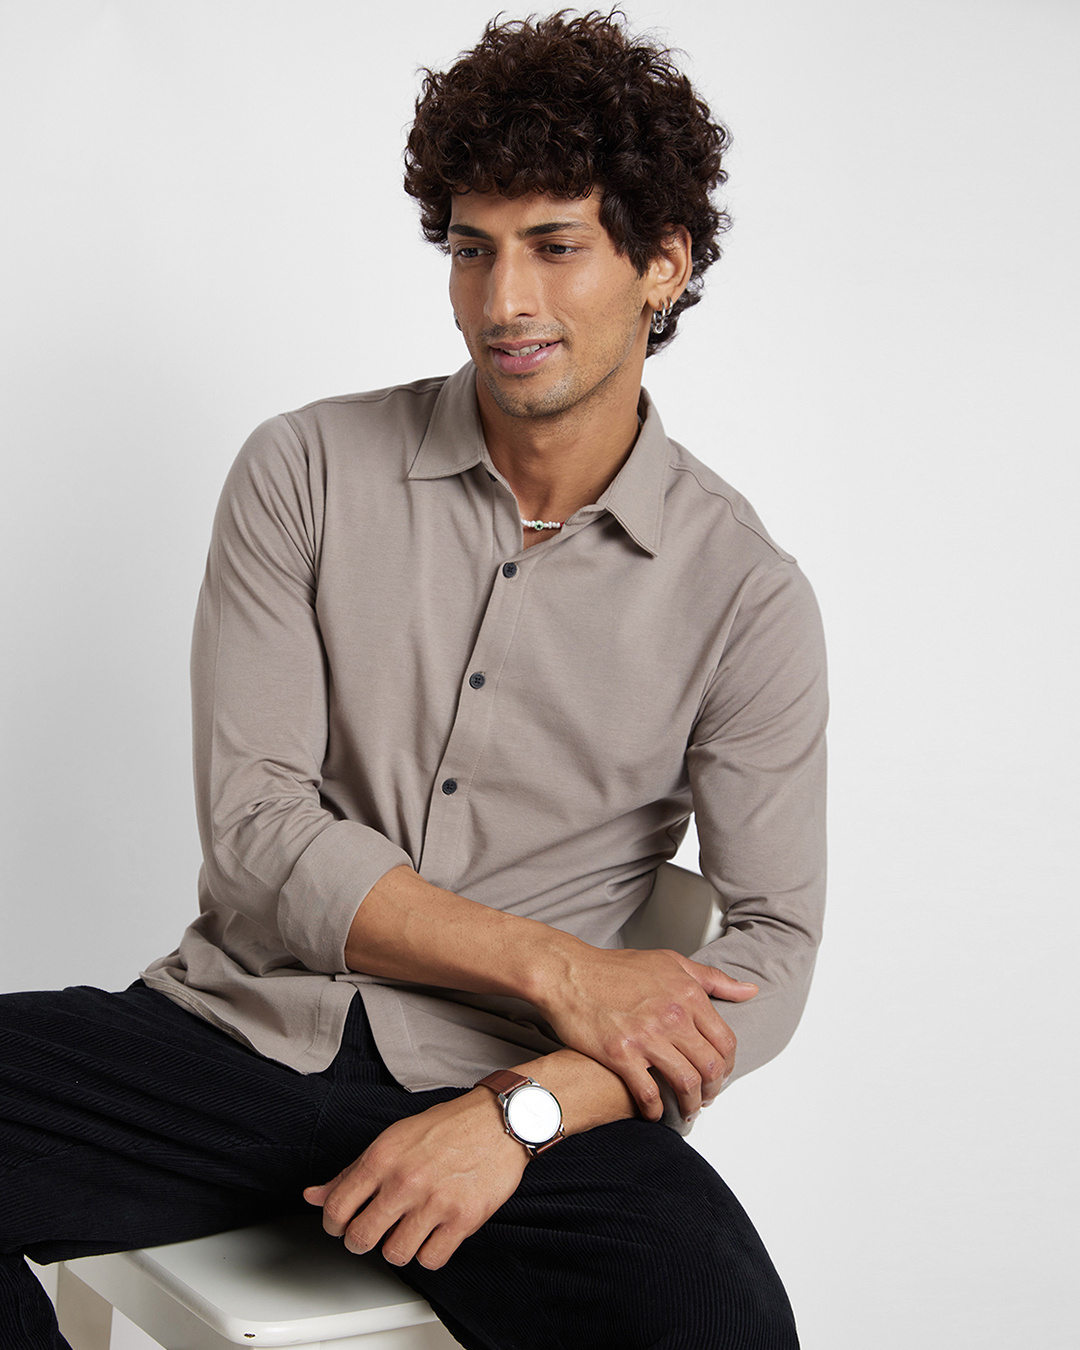 Buy Men's Khaki Shirt Online at Bewakoof